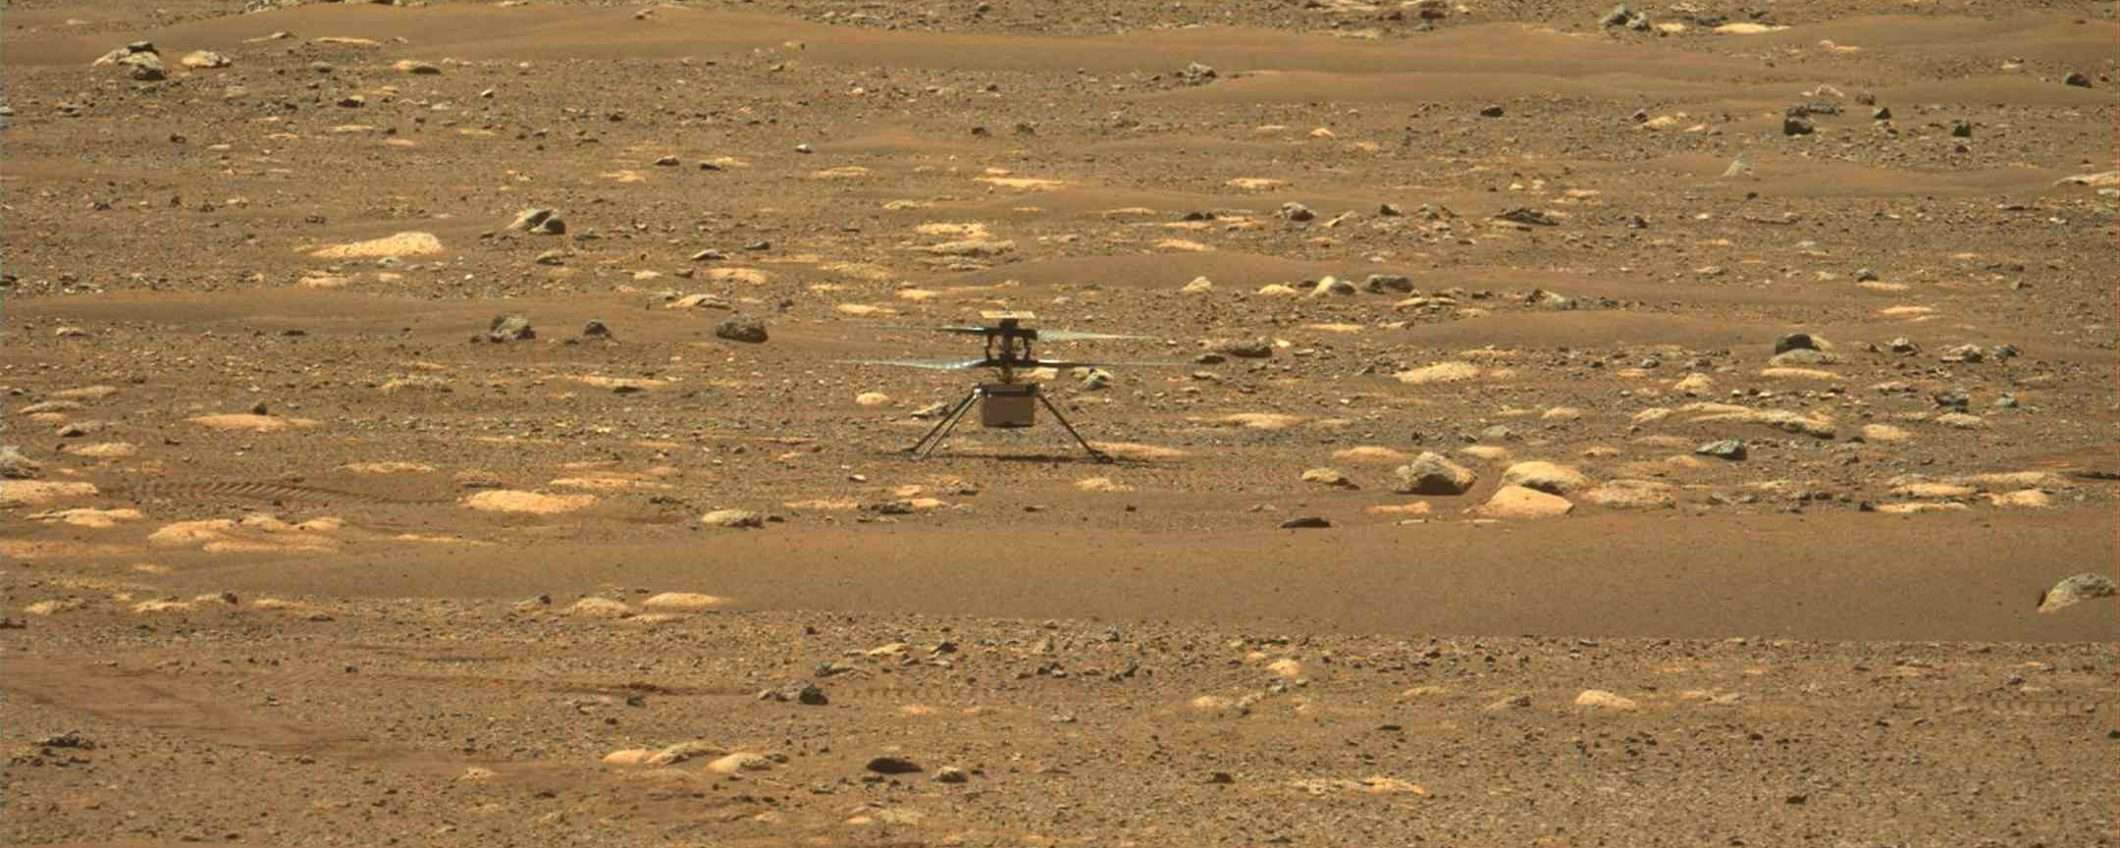 Ingenuity pronto per un altro volo su Marte (update)